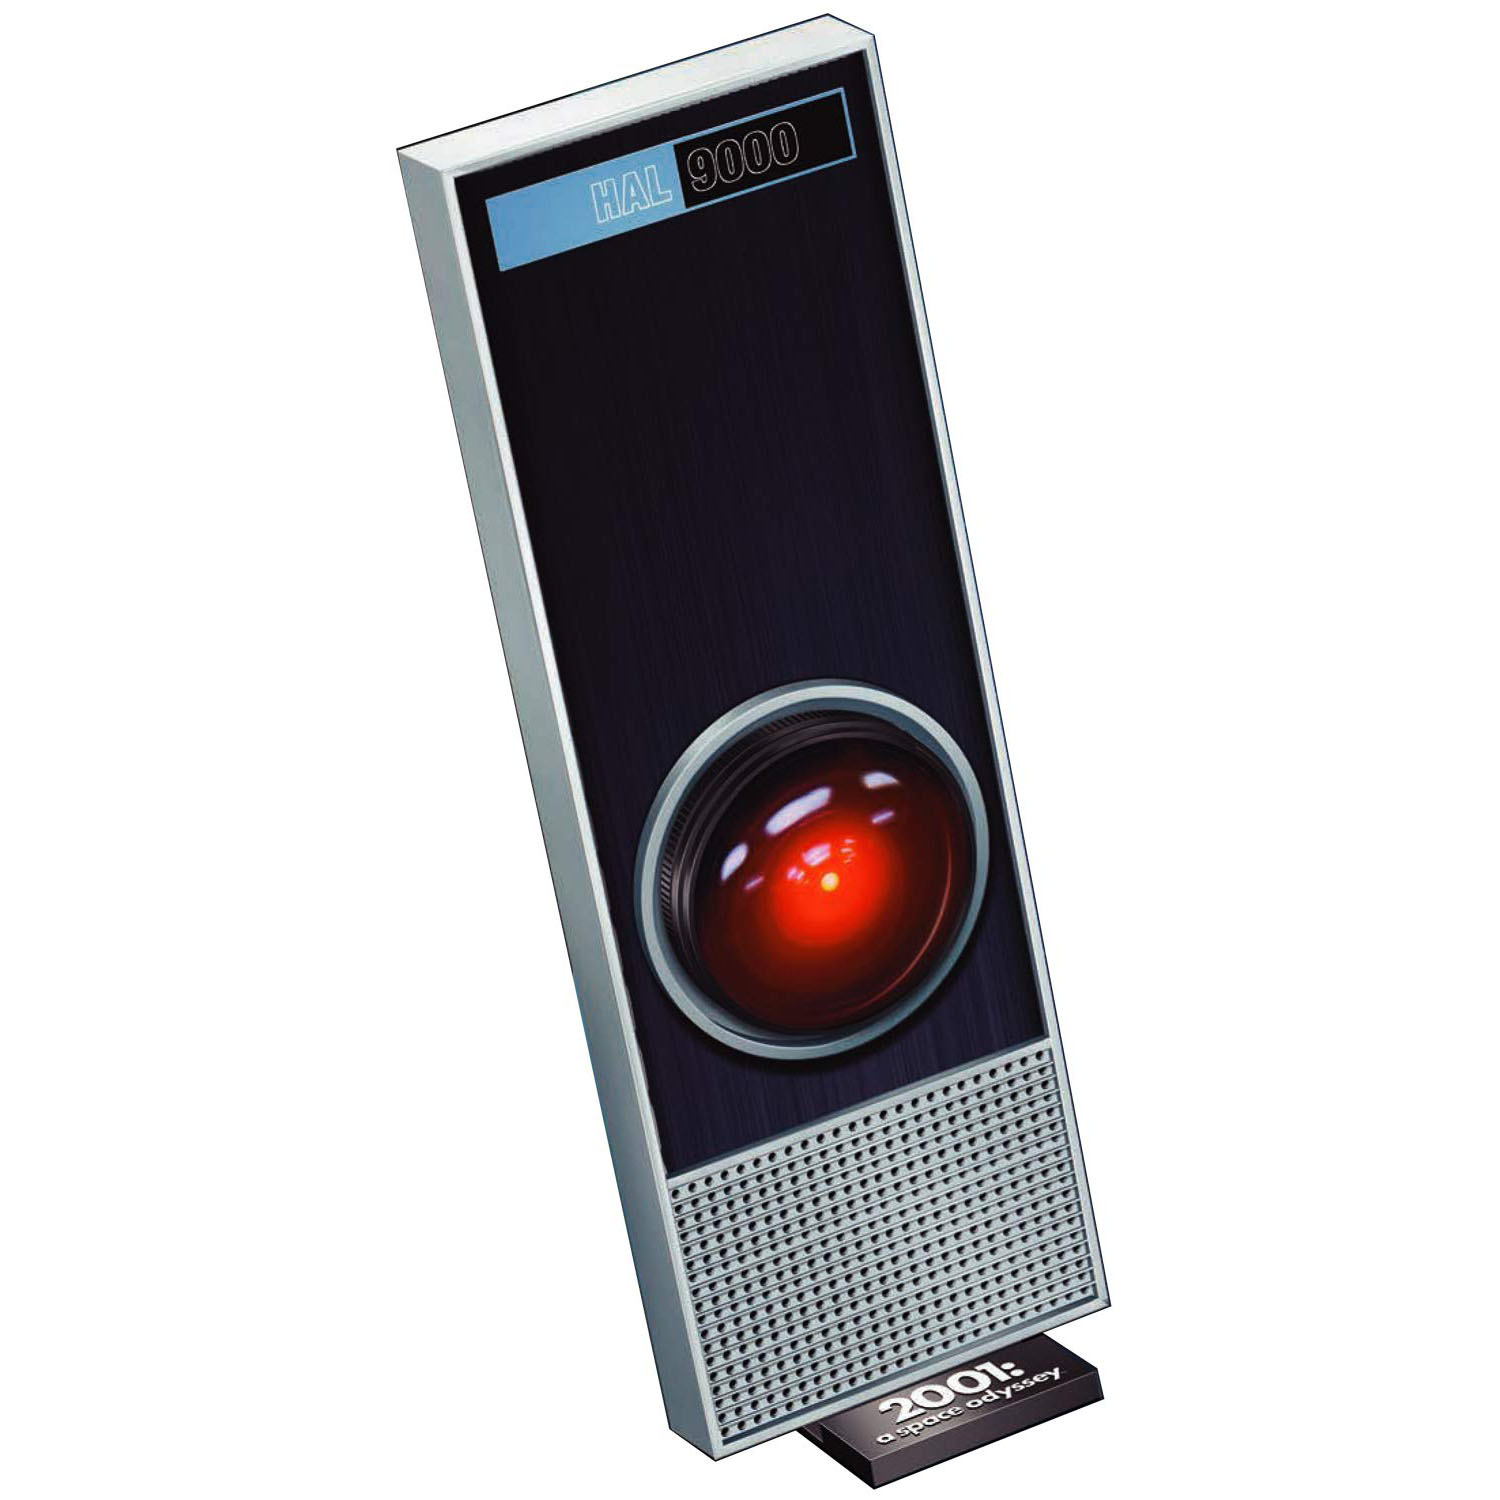 2001年宇宙の旅『HAL9000』1/1 プラモデル-002